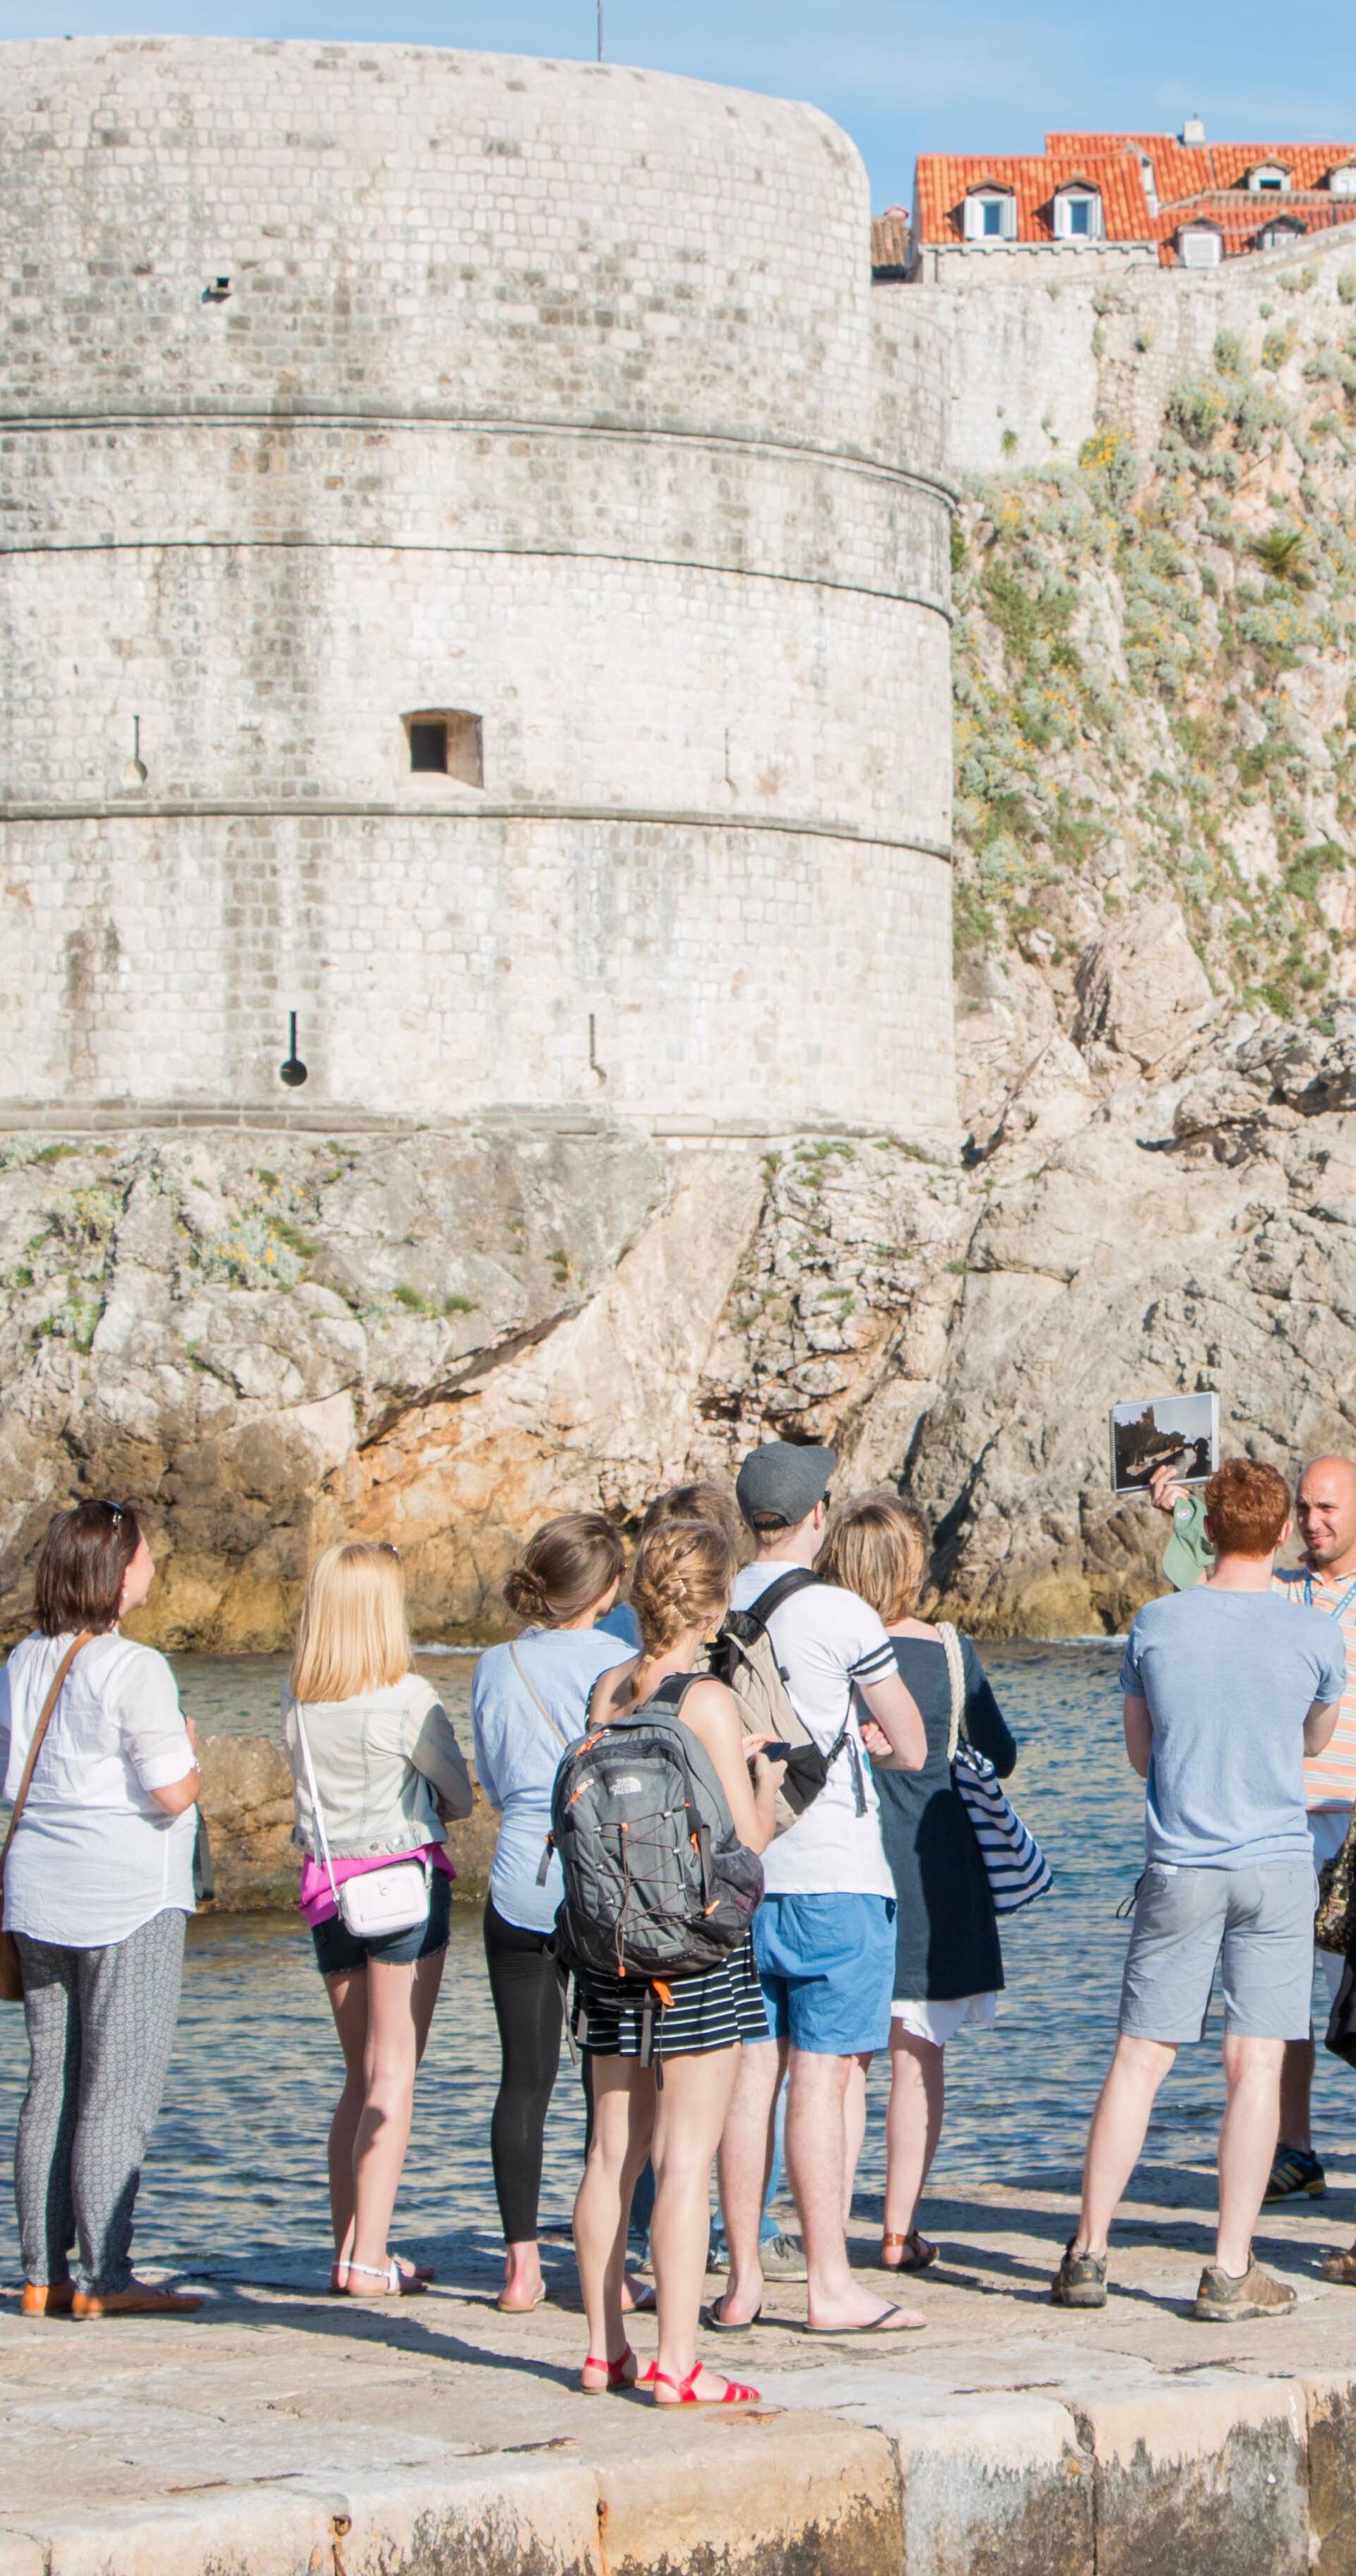 'Stranci misle da je Dubrovnik sagrađen zbog Igre prijestolja'